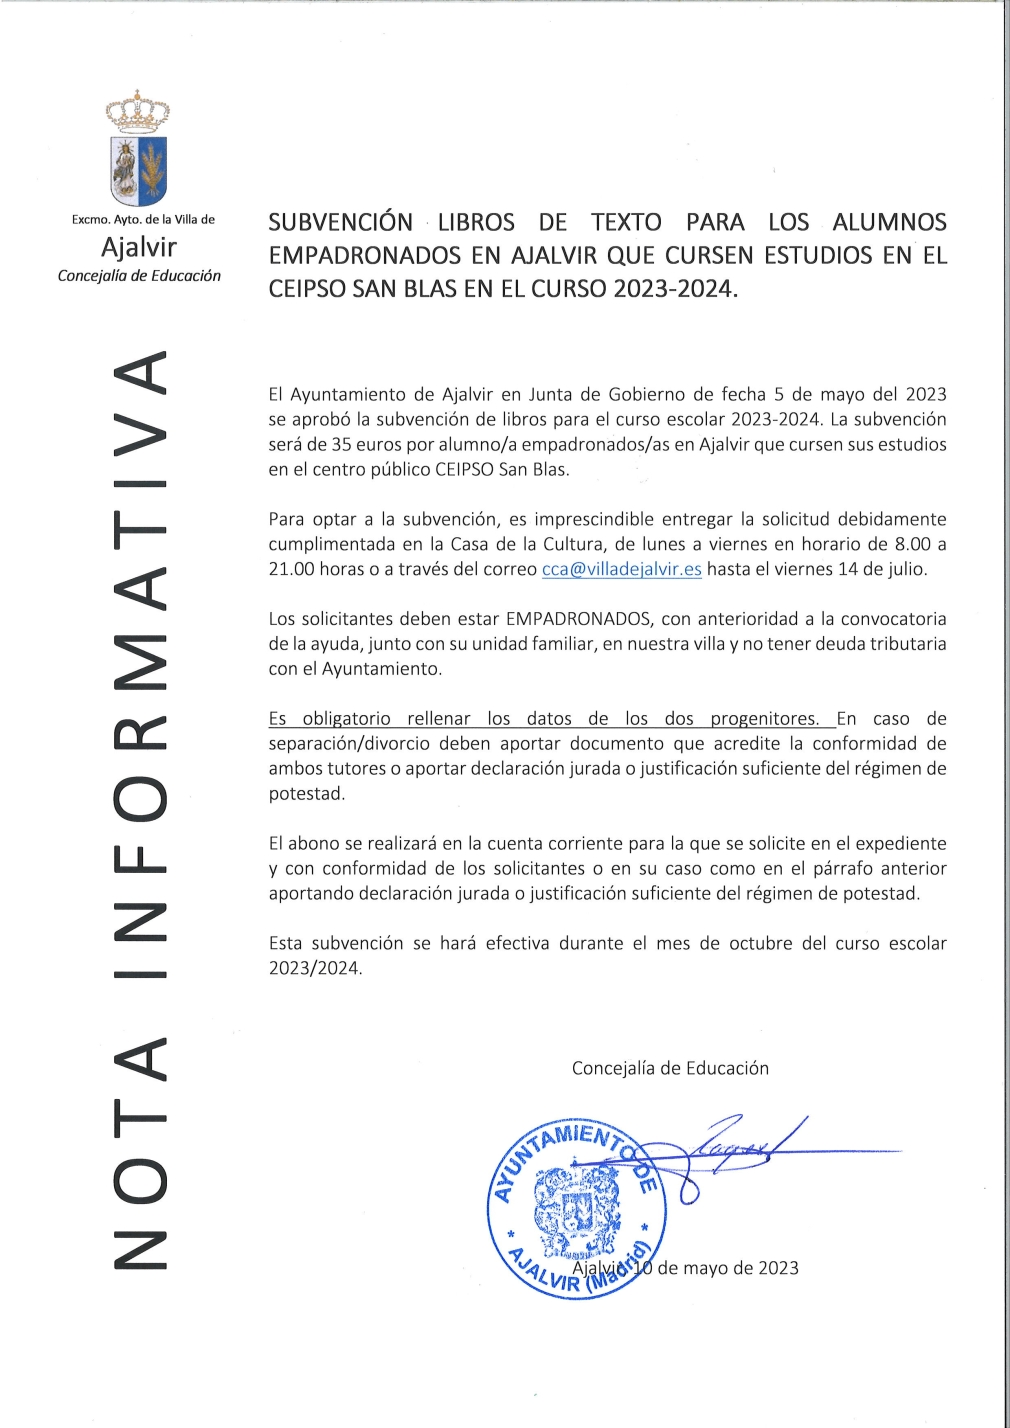 SUBVENCION LIBROS DE TEXTO PARA LOS ALUMNOS EMPADRONADOS QUE CURSE ESTUDIOS EN EL CEIPSO SAN BLAS. CURSO 2023/20224